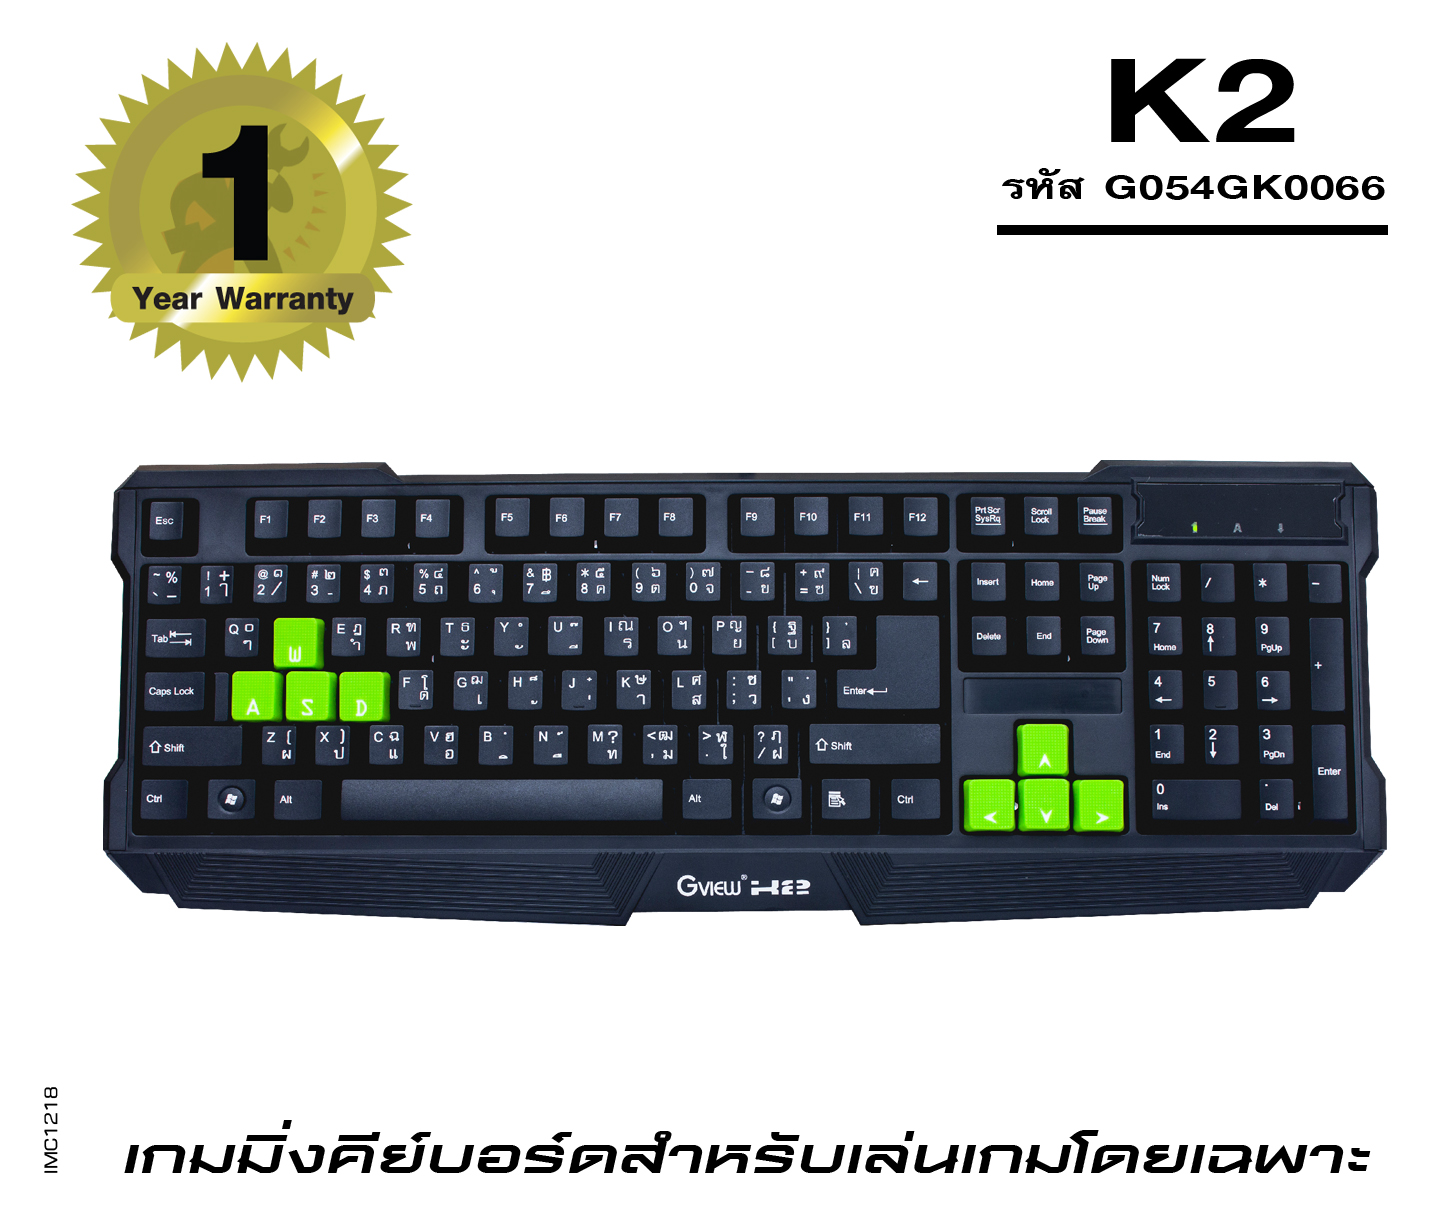 รุ่น K2 (รหัส G054GK0066)